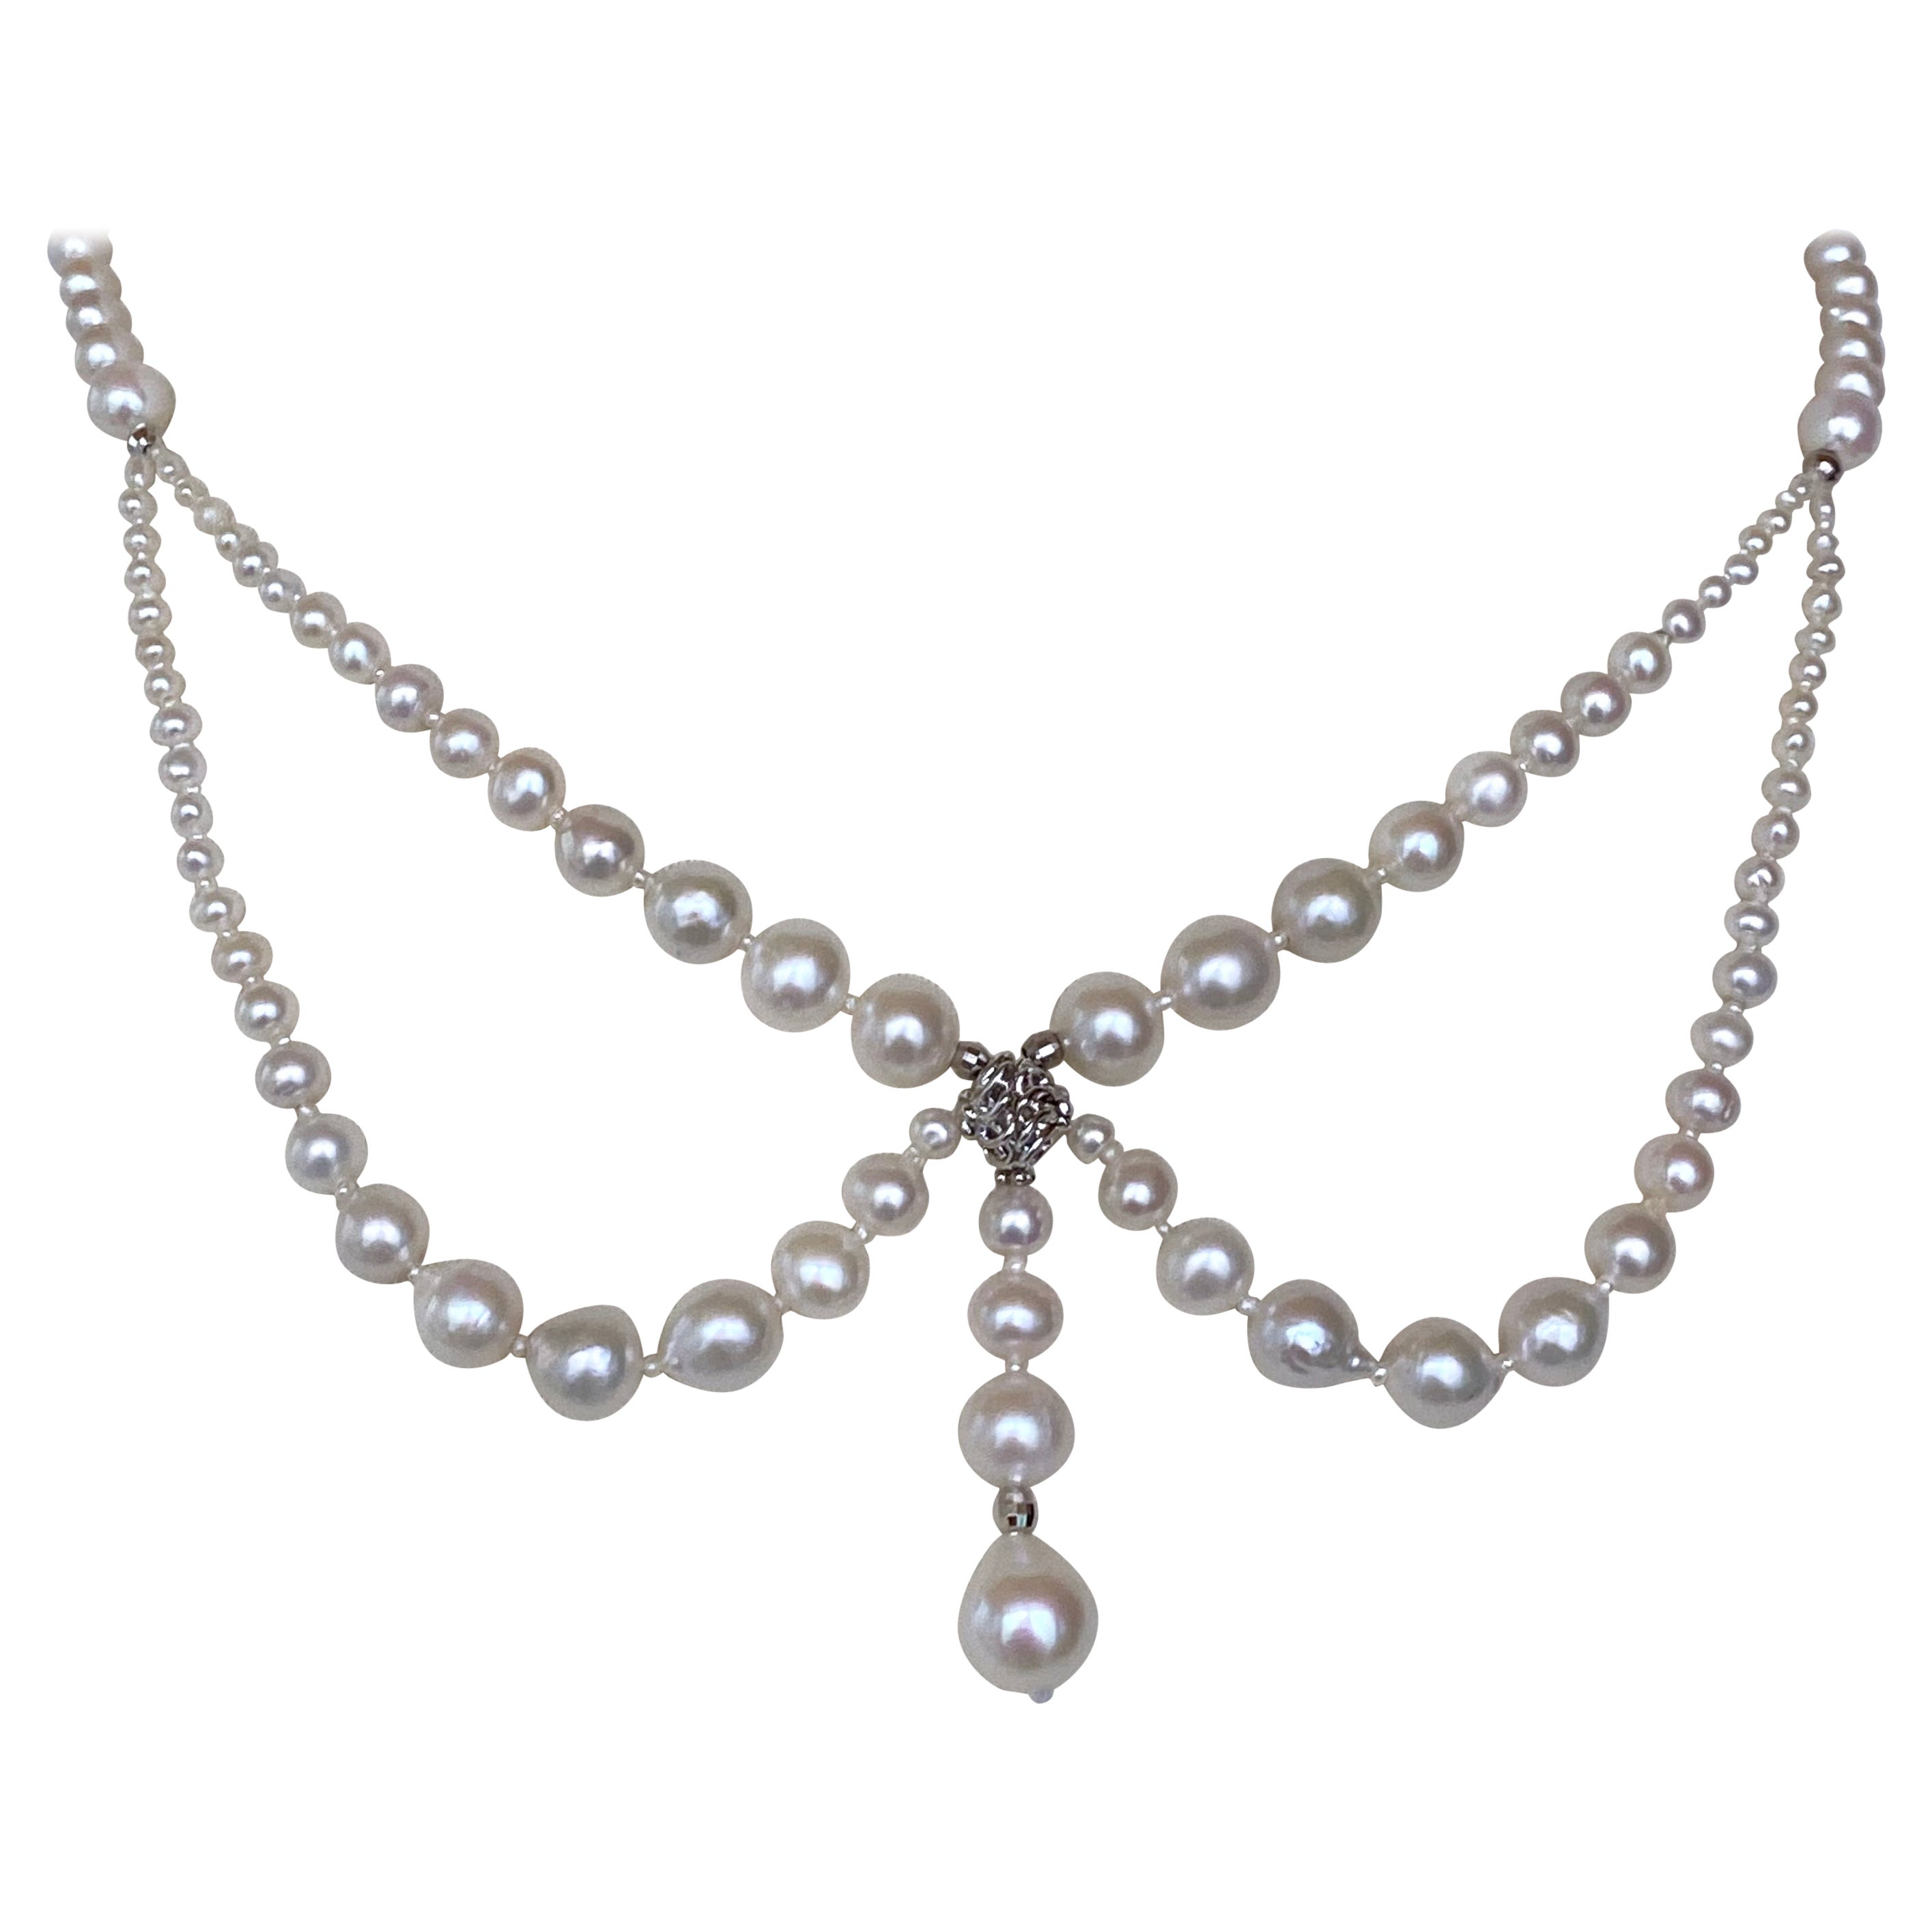 Marina J., viktorianisch inspirierte drapierte Perle und versilberte Rhodium-Halskette